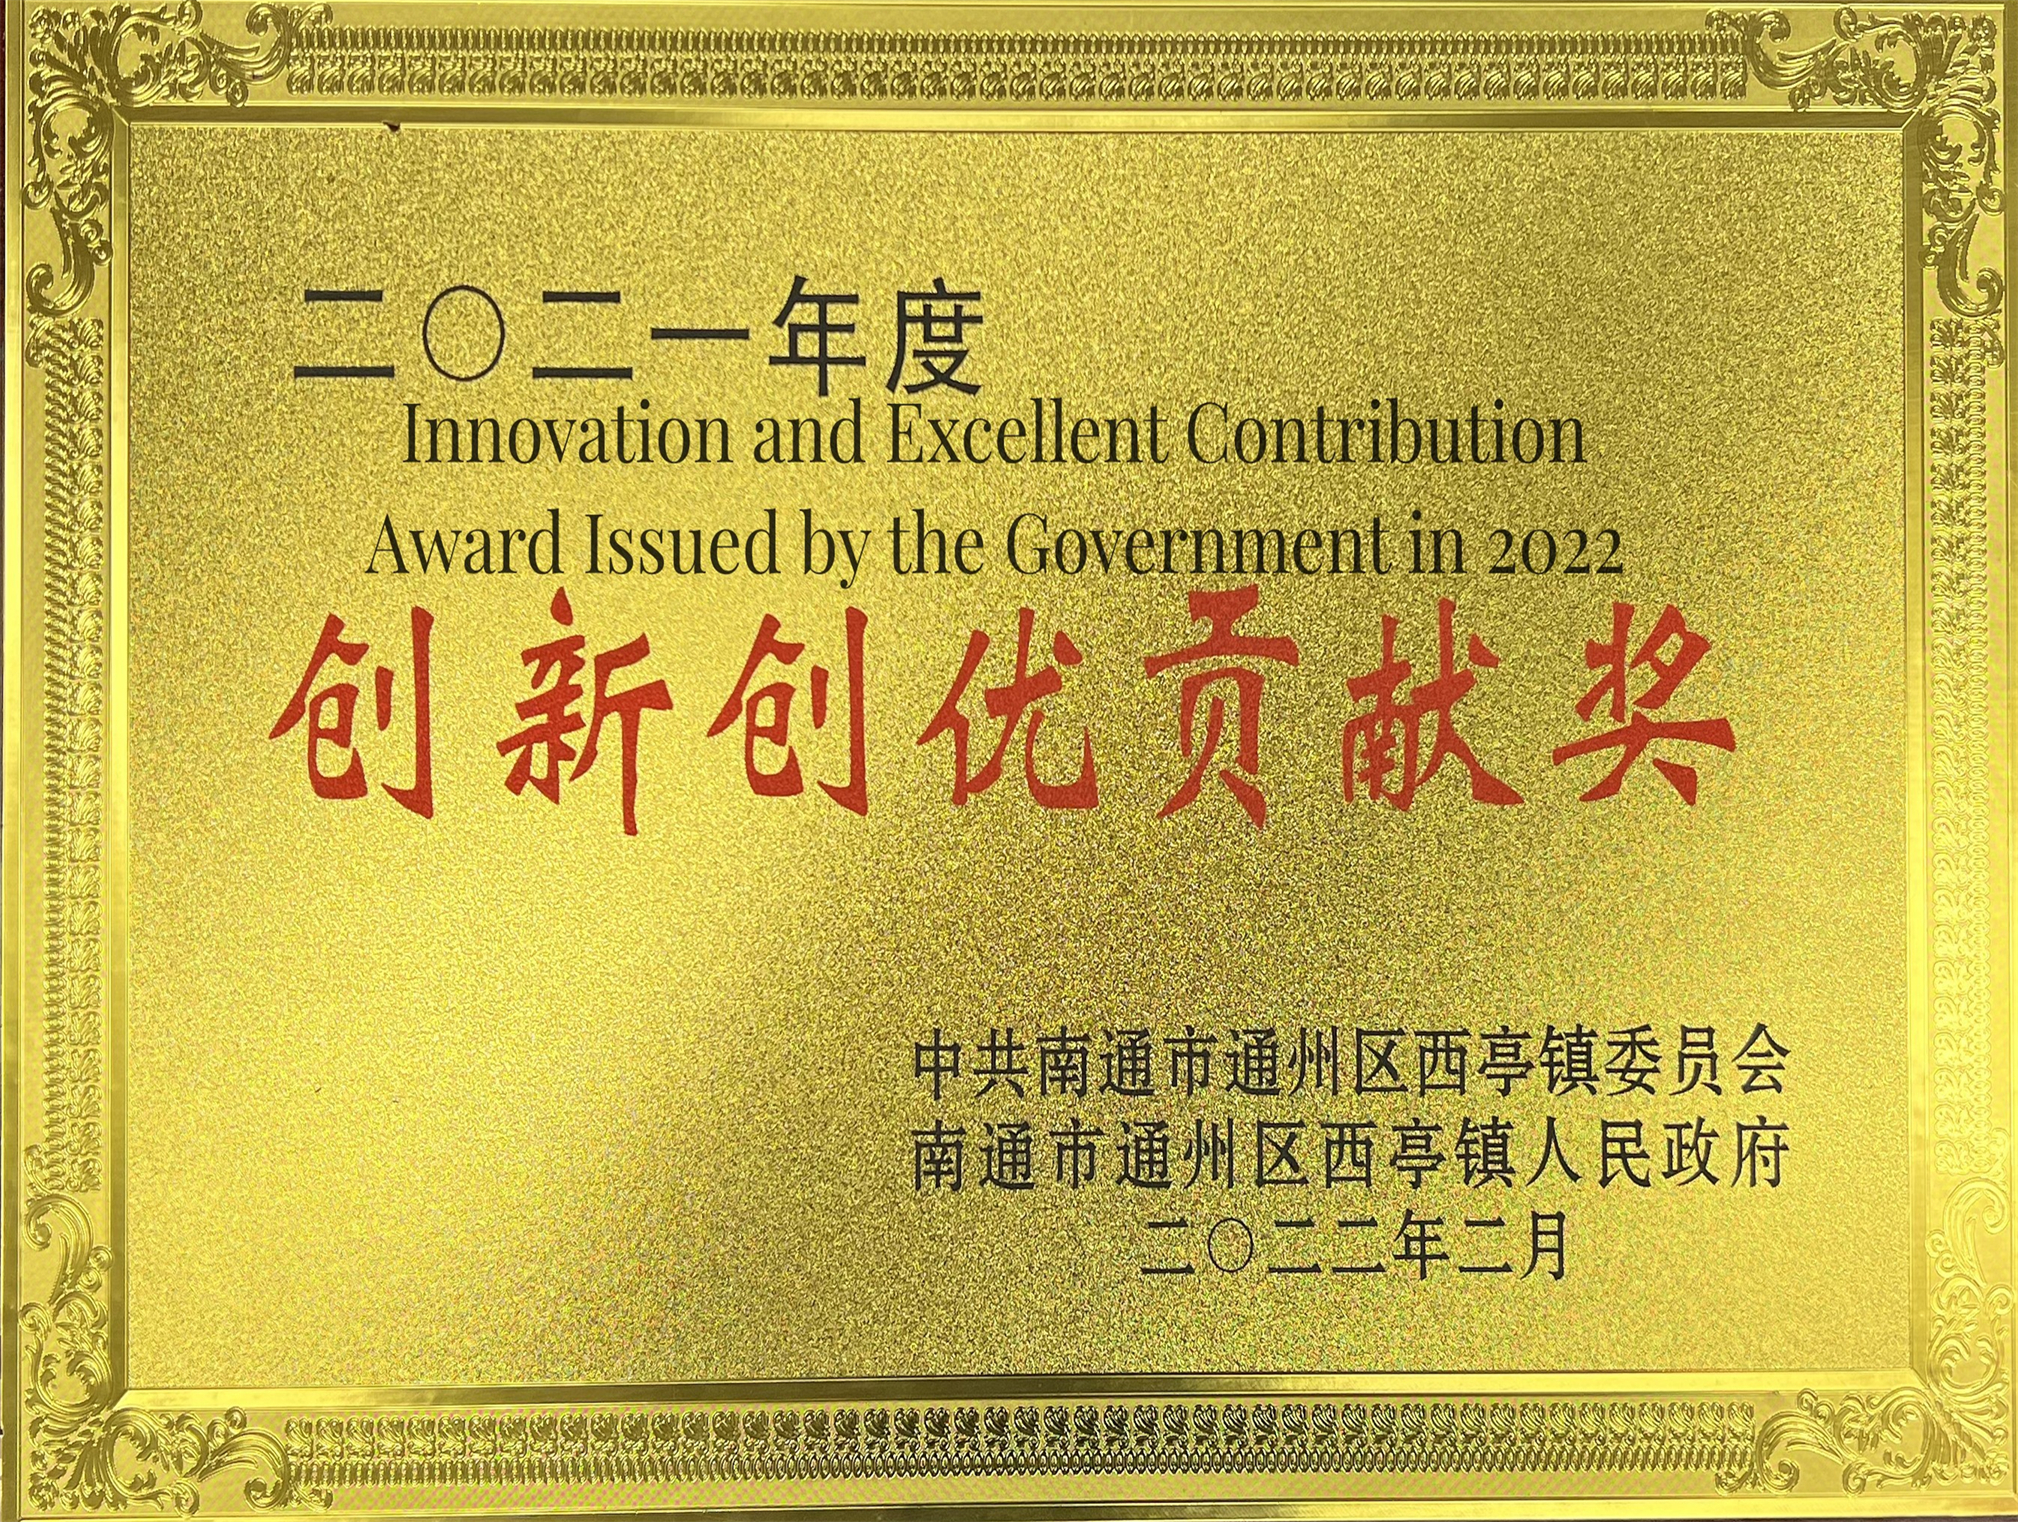 Premio Innovazione e Contributo Eccellente nel 2022